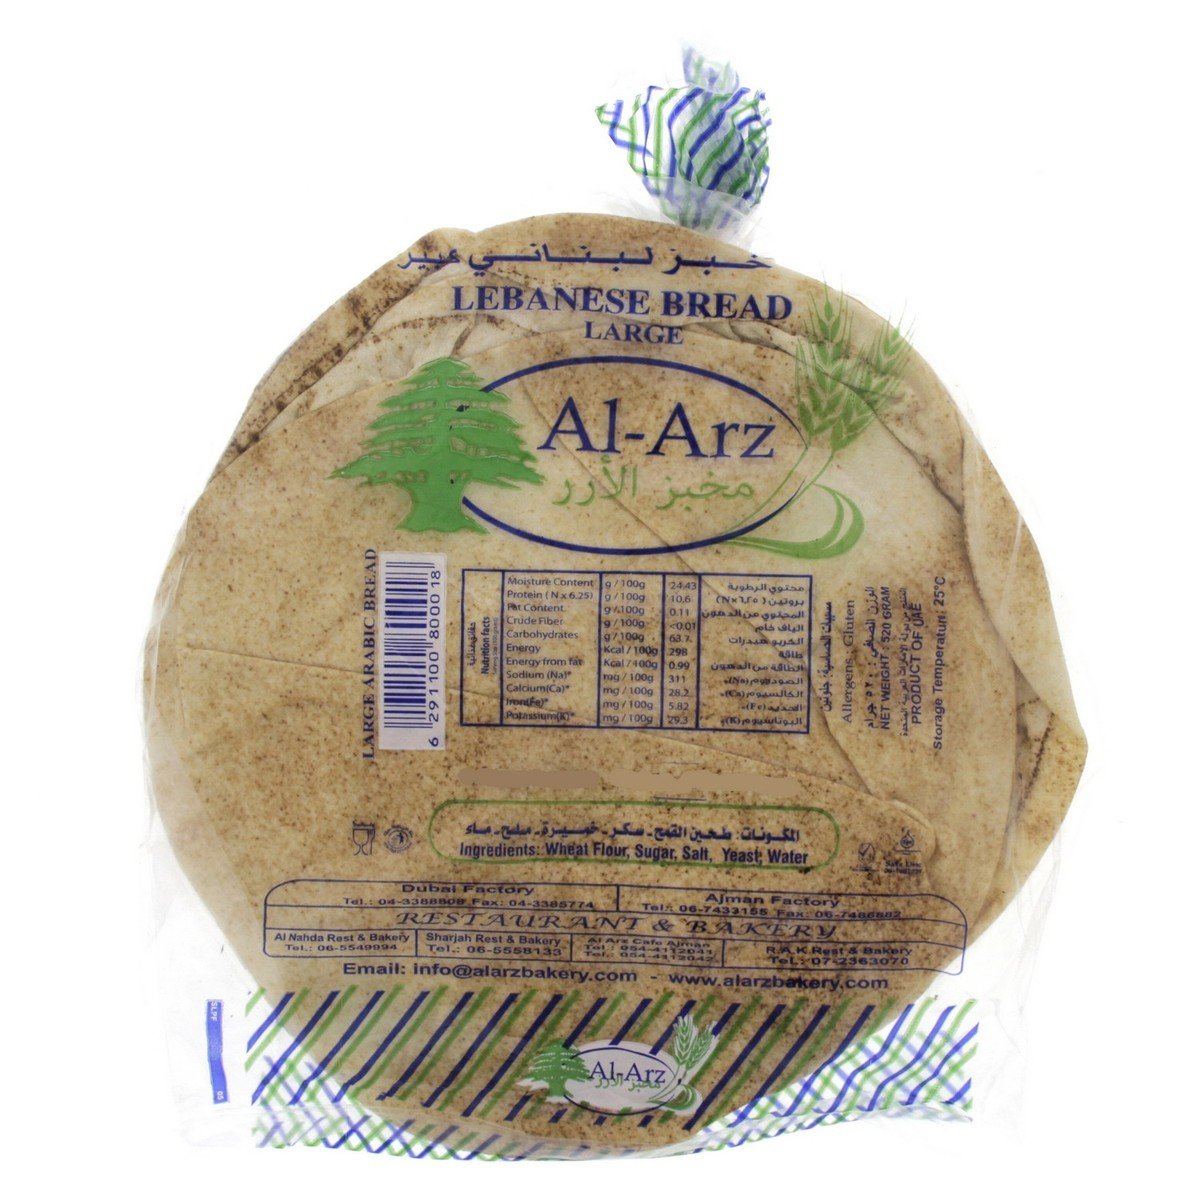 Al Arz Large Lebanese Bread 6 pcs